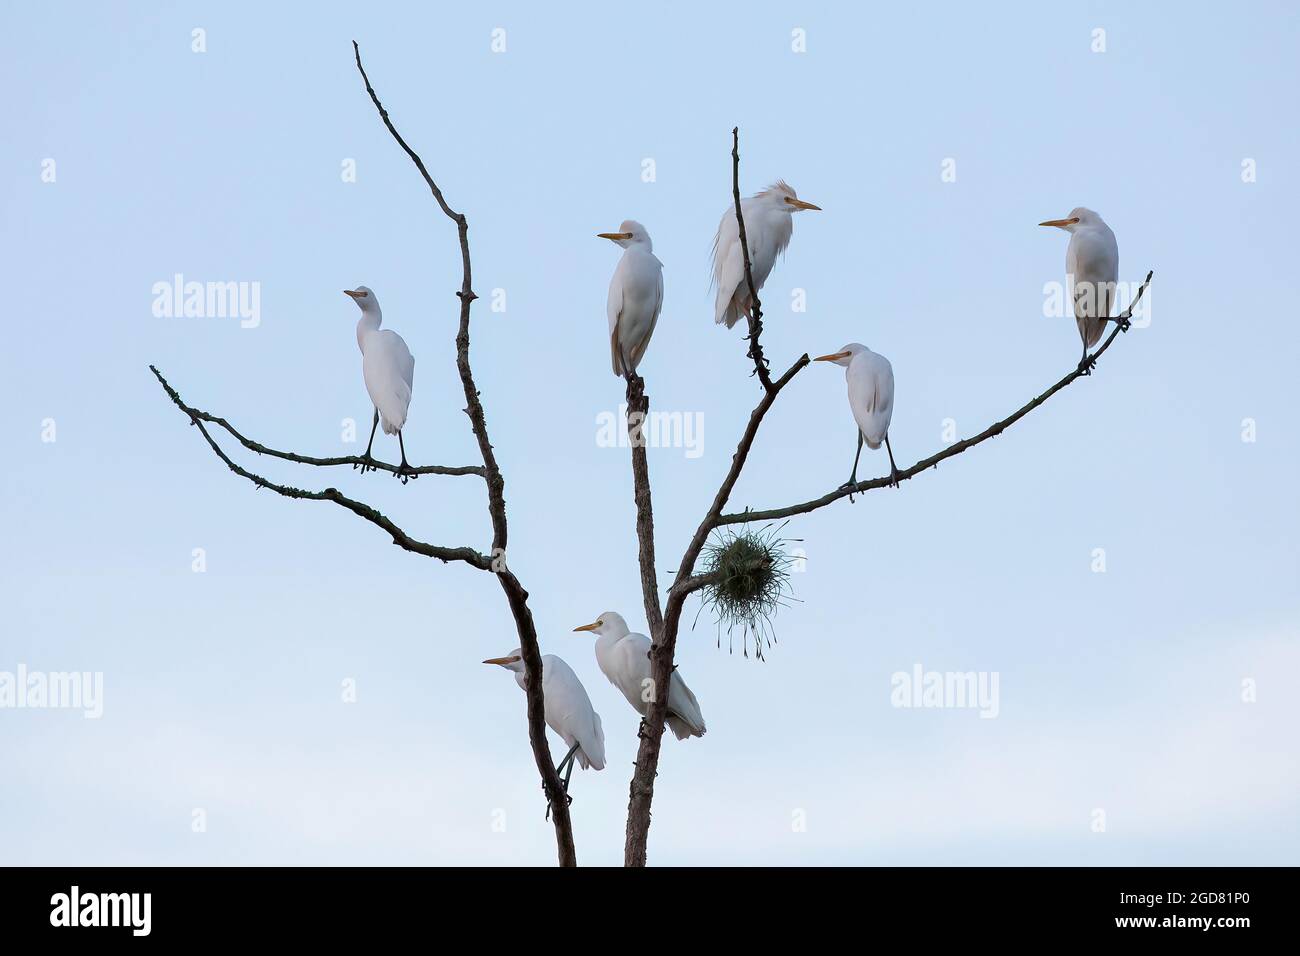 Sette garzette di bestiame (Bubulcus ibis) sono in cima a un albero morto con un cielo limpido sullo sfondo. Foto Stock